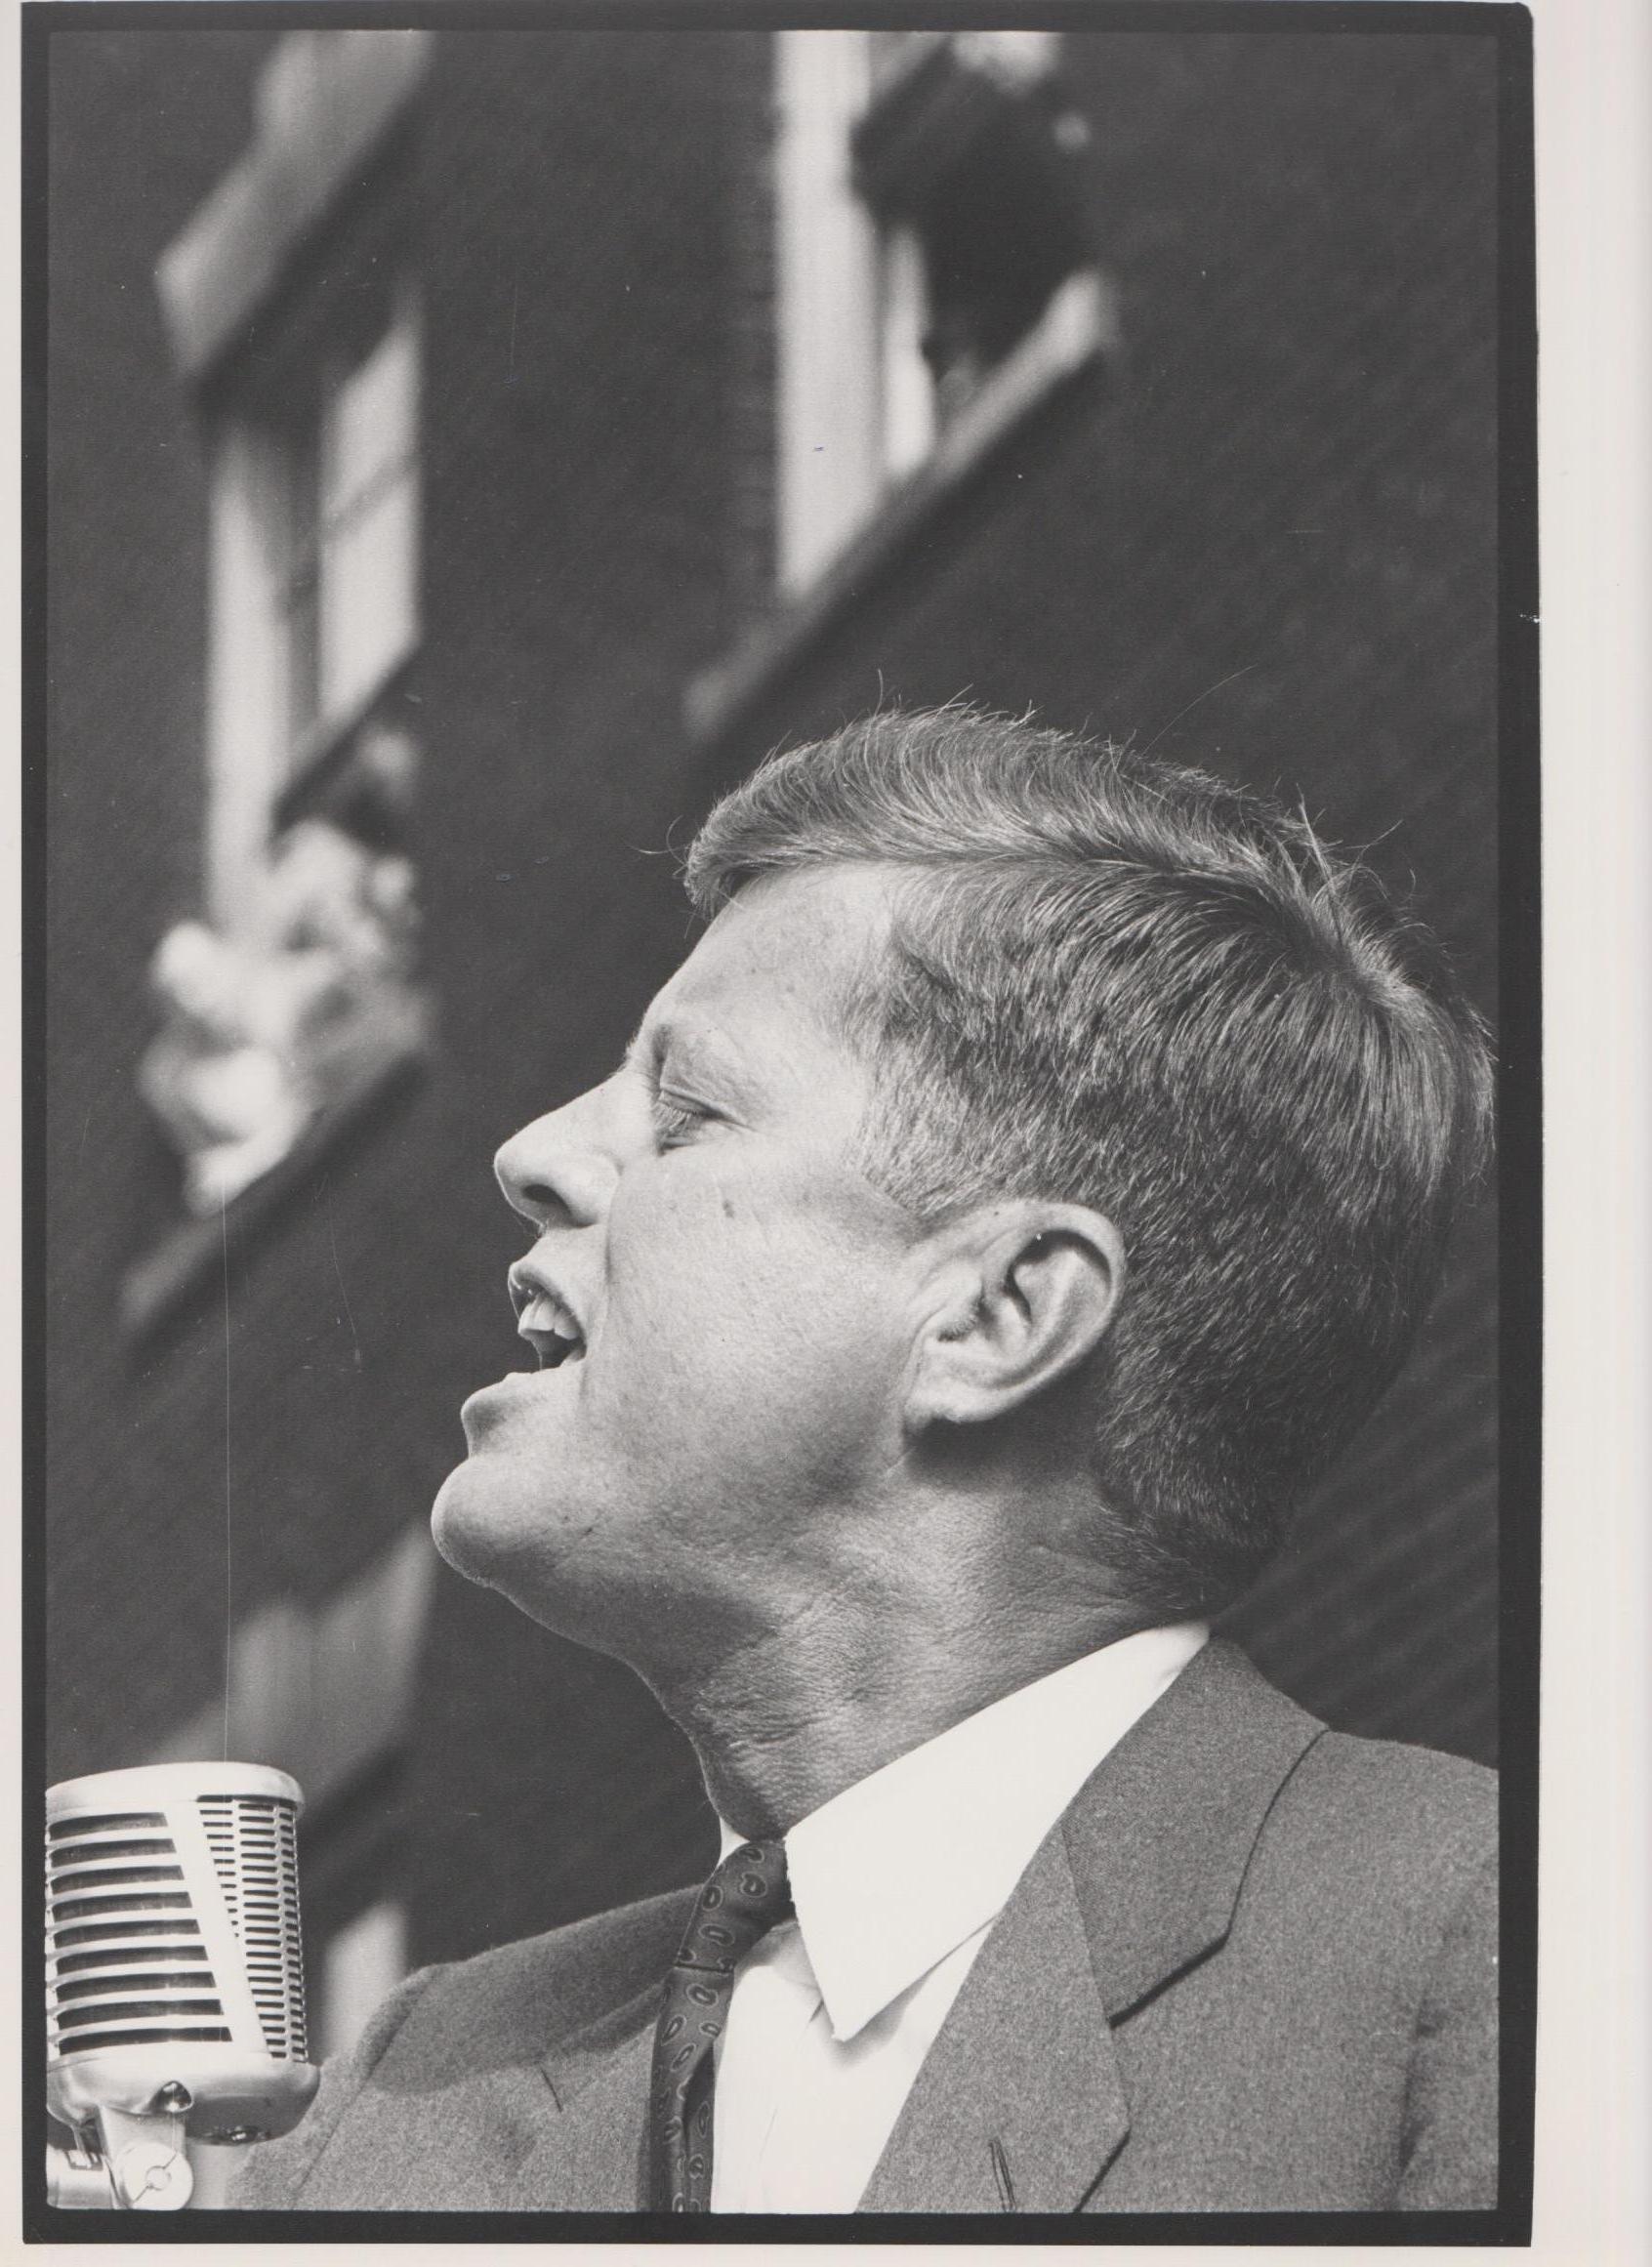 JFK sprechen - John F. Kennedy-Wahlenkampagne 1960